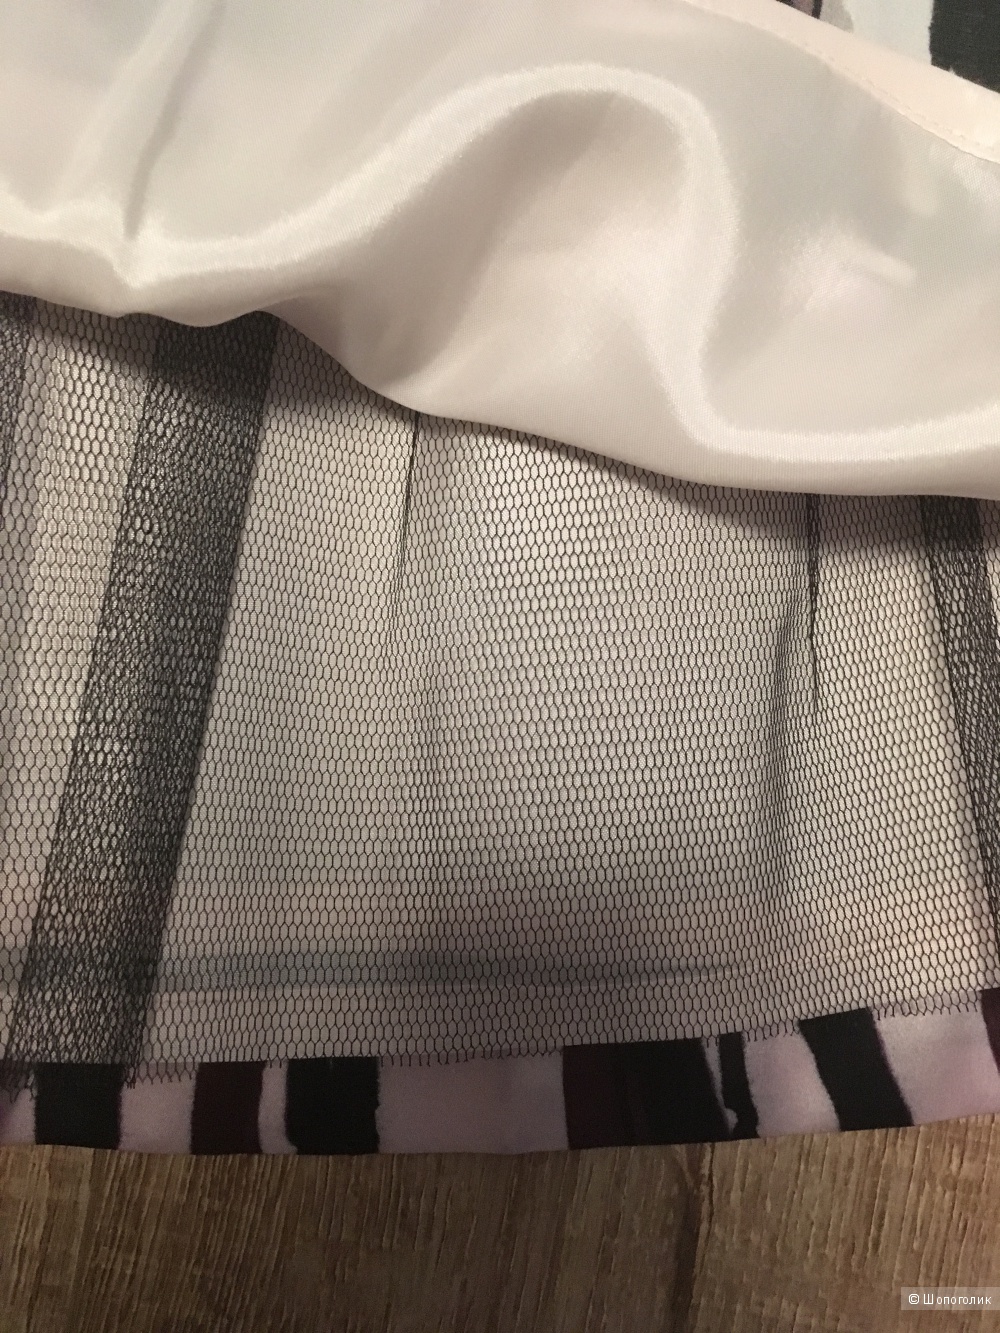 Шелковая юбка марки 2B.RYCH, США, новая с этикетками, размер 2, наш 44